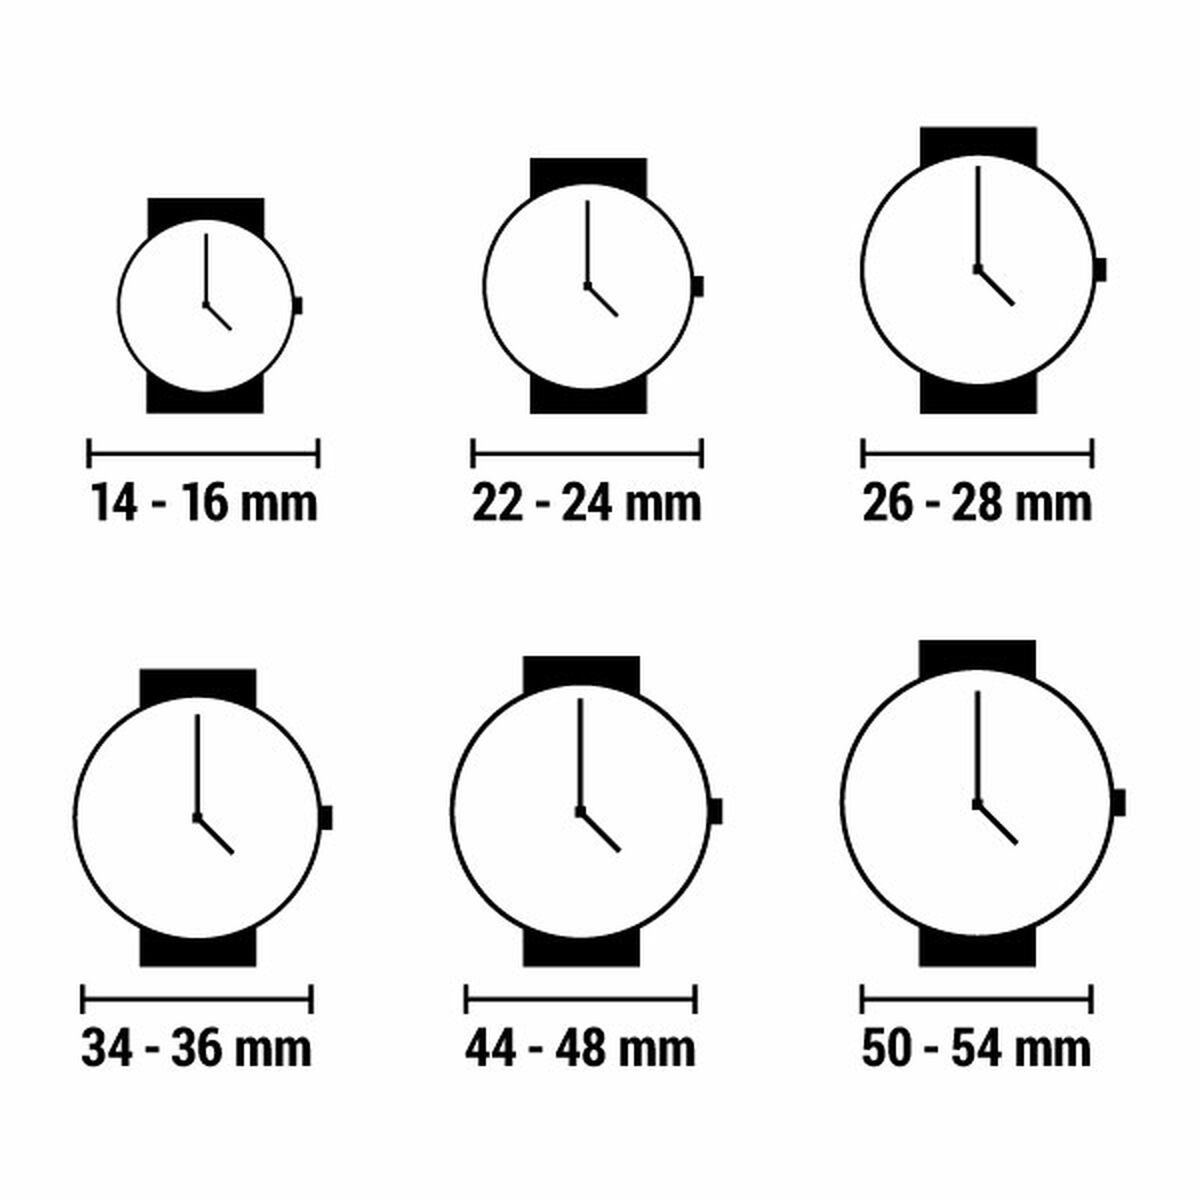 Horloge Dames Esprit ES1L019L0025